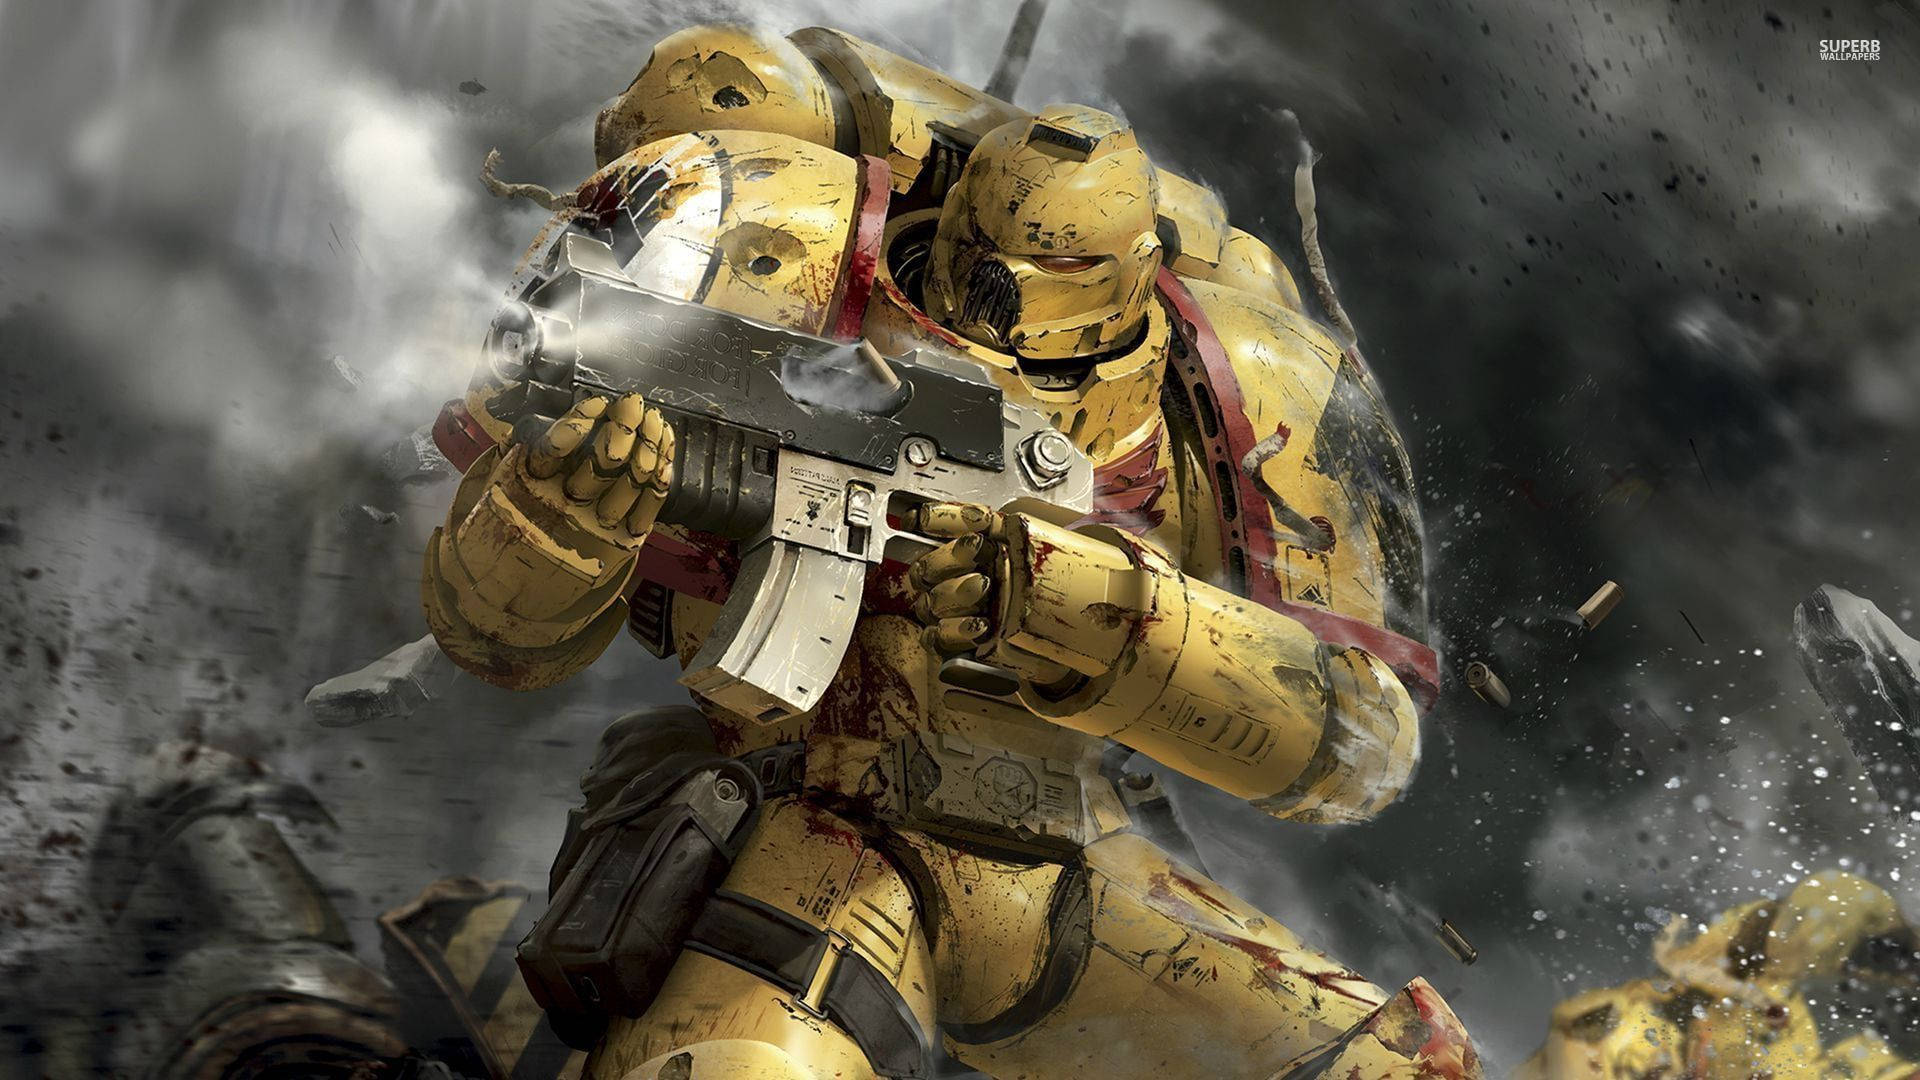 Gold Space Marine Warhammer Wallpaper